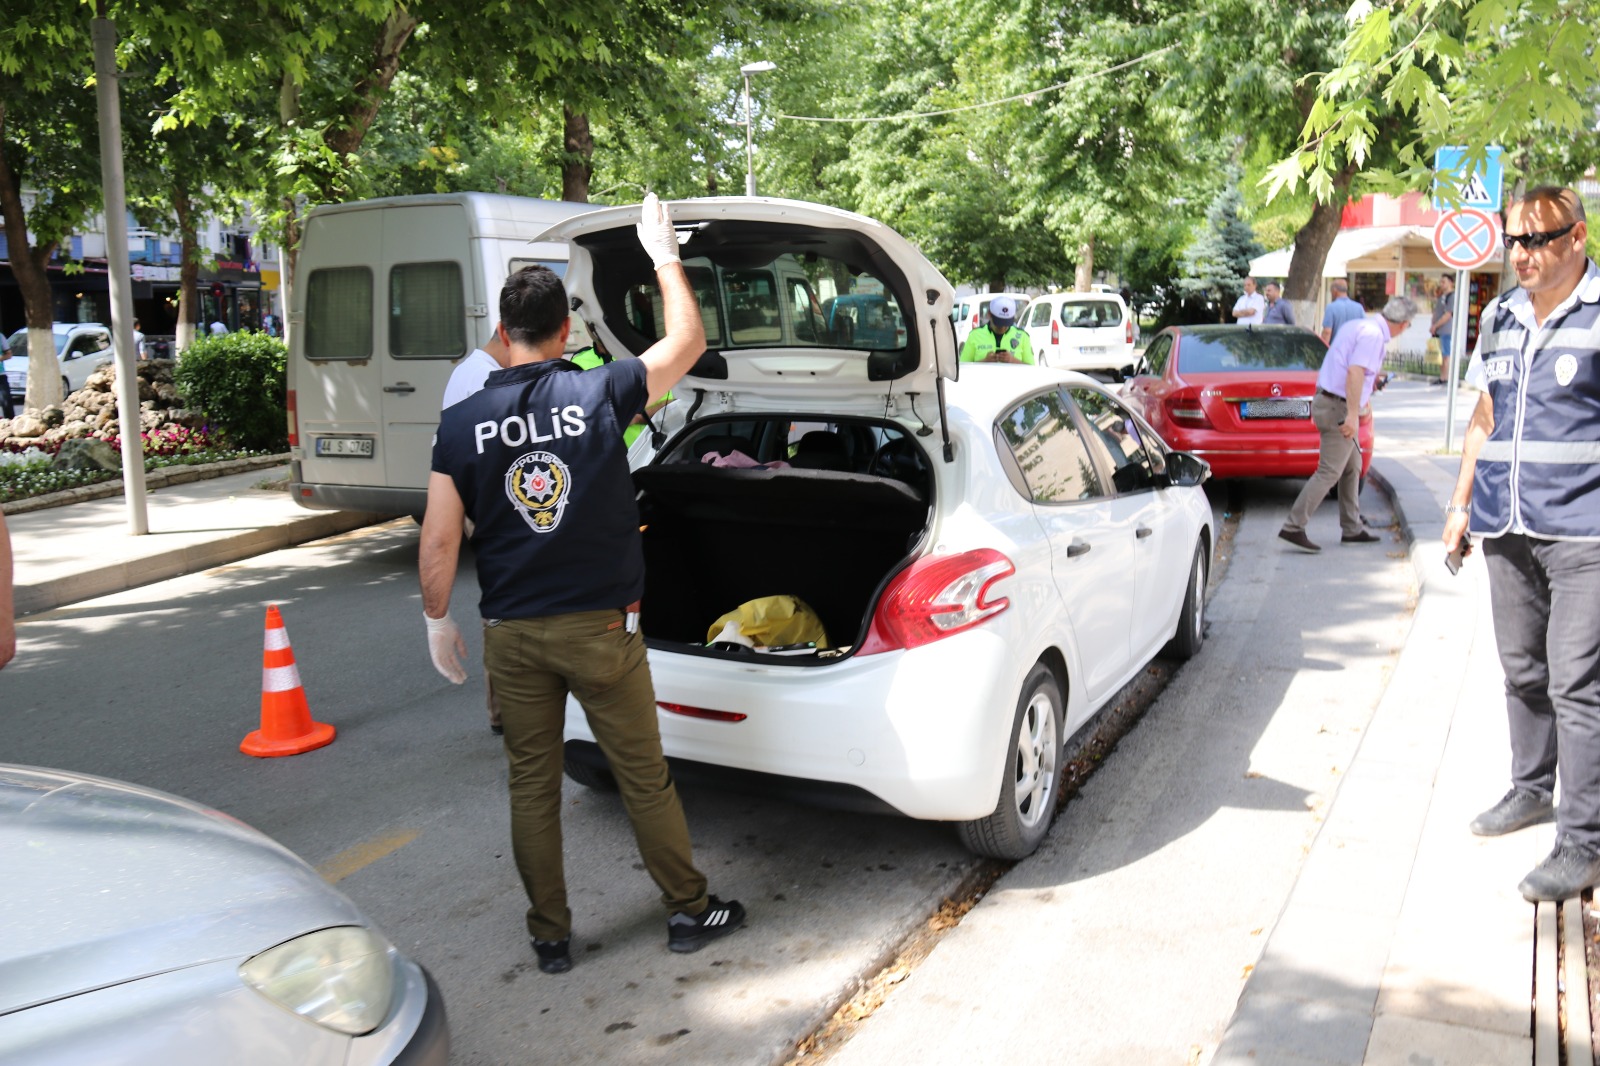 Malatya İl Emniyet Müdürlüğü tarafından 800 polisin görev aldığı Malatya Huzur Güven Uygulaması gerçekleştirildi.